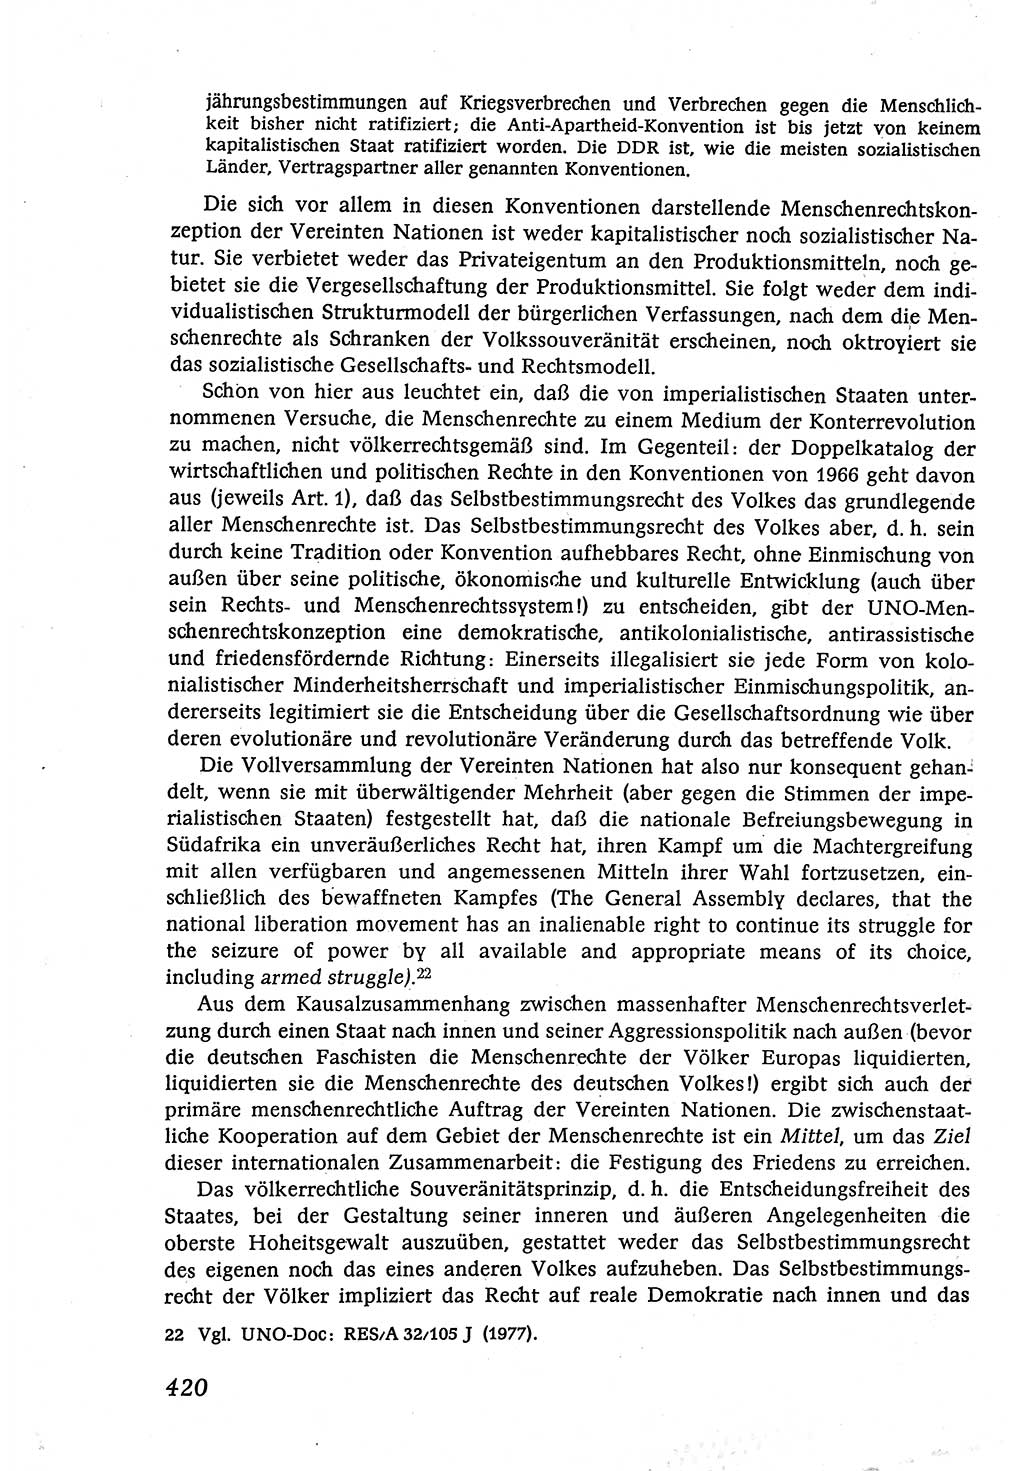 Marxistisch-leninistische (ML) Staats- und Rechtstheorie [Deutsche Demokratische Republik (DDR)], Lehrbuch 1980, Seite 420 (ML St.-R.-Th. DDR Lb. 1980, S. 420)